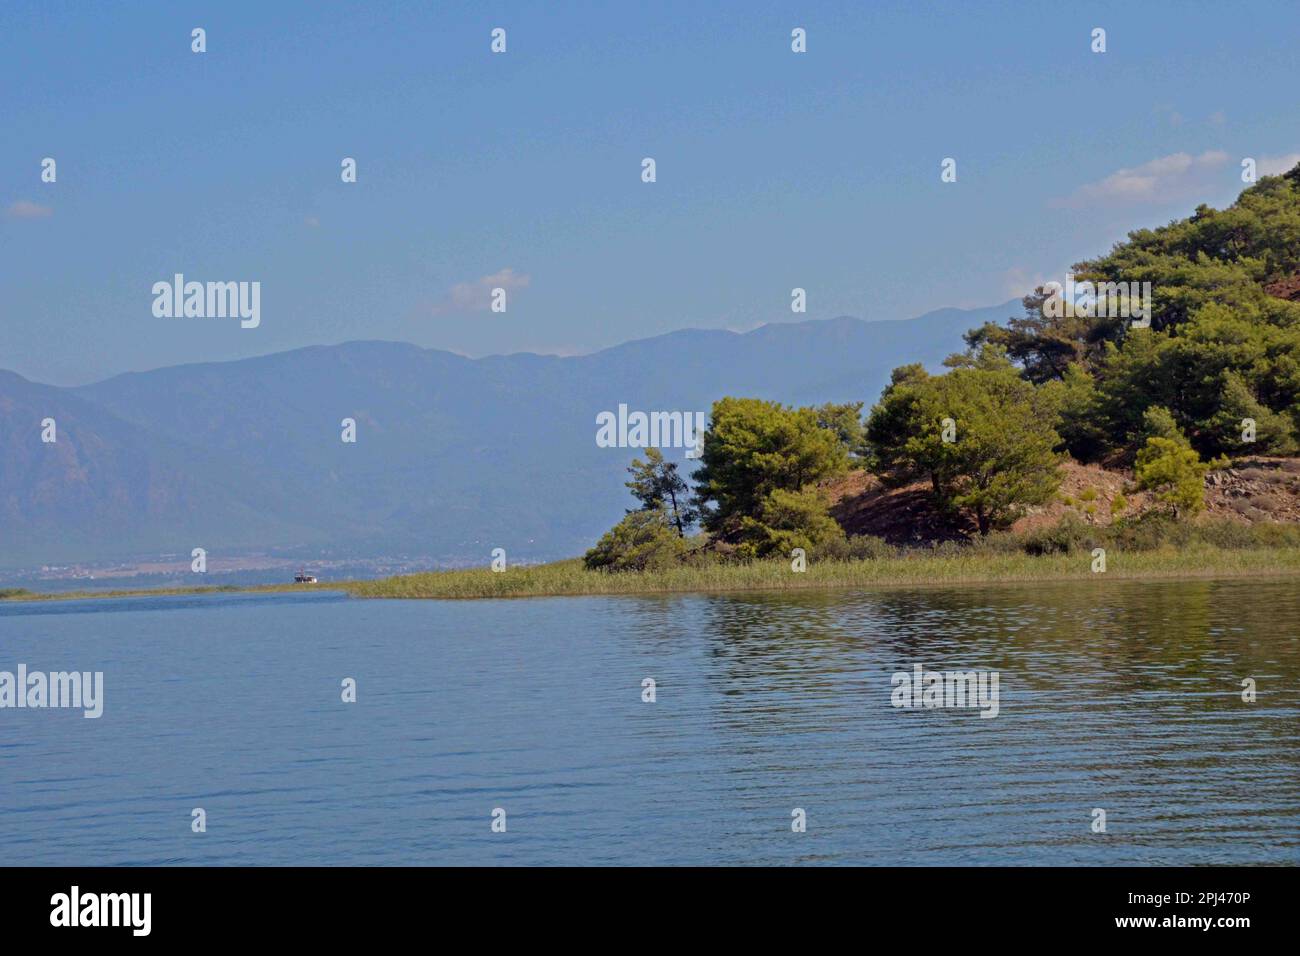 Türkei, Lycia: Betreten Sie den Koycegiz-See, der sich über 65 Quadratkilometer erstreckt, von den Dalyan Delta Schilfbeeten. Stockfoto